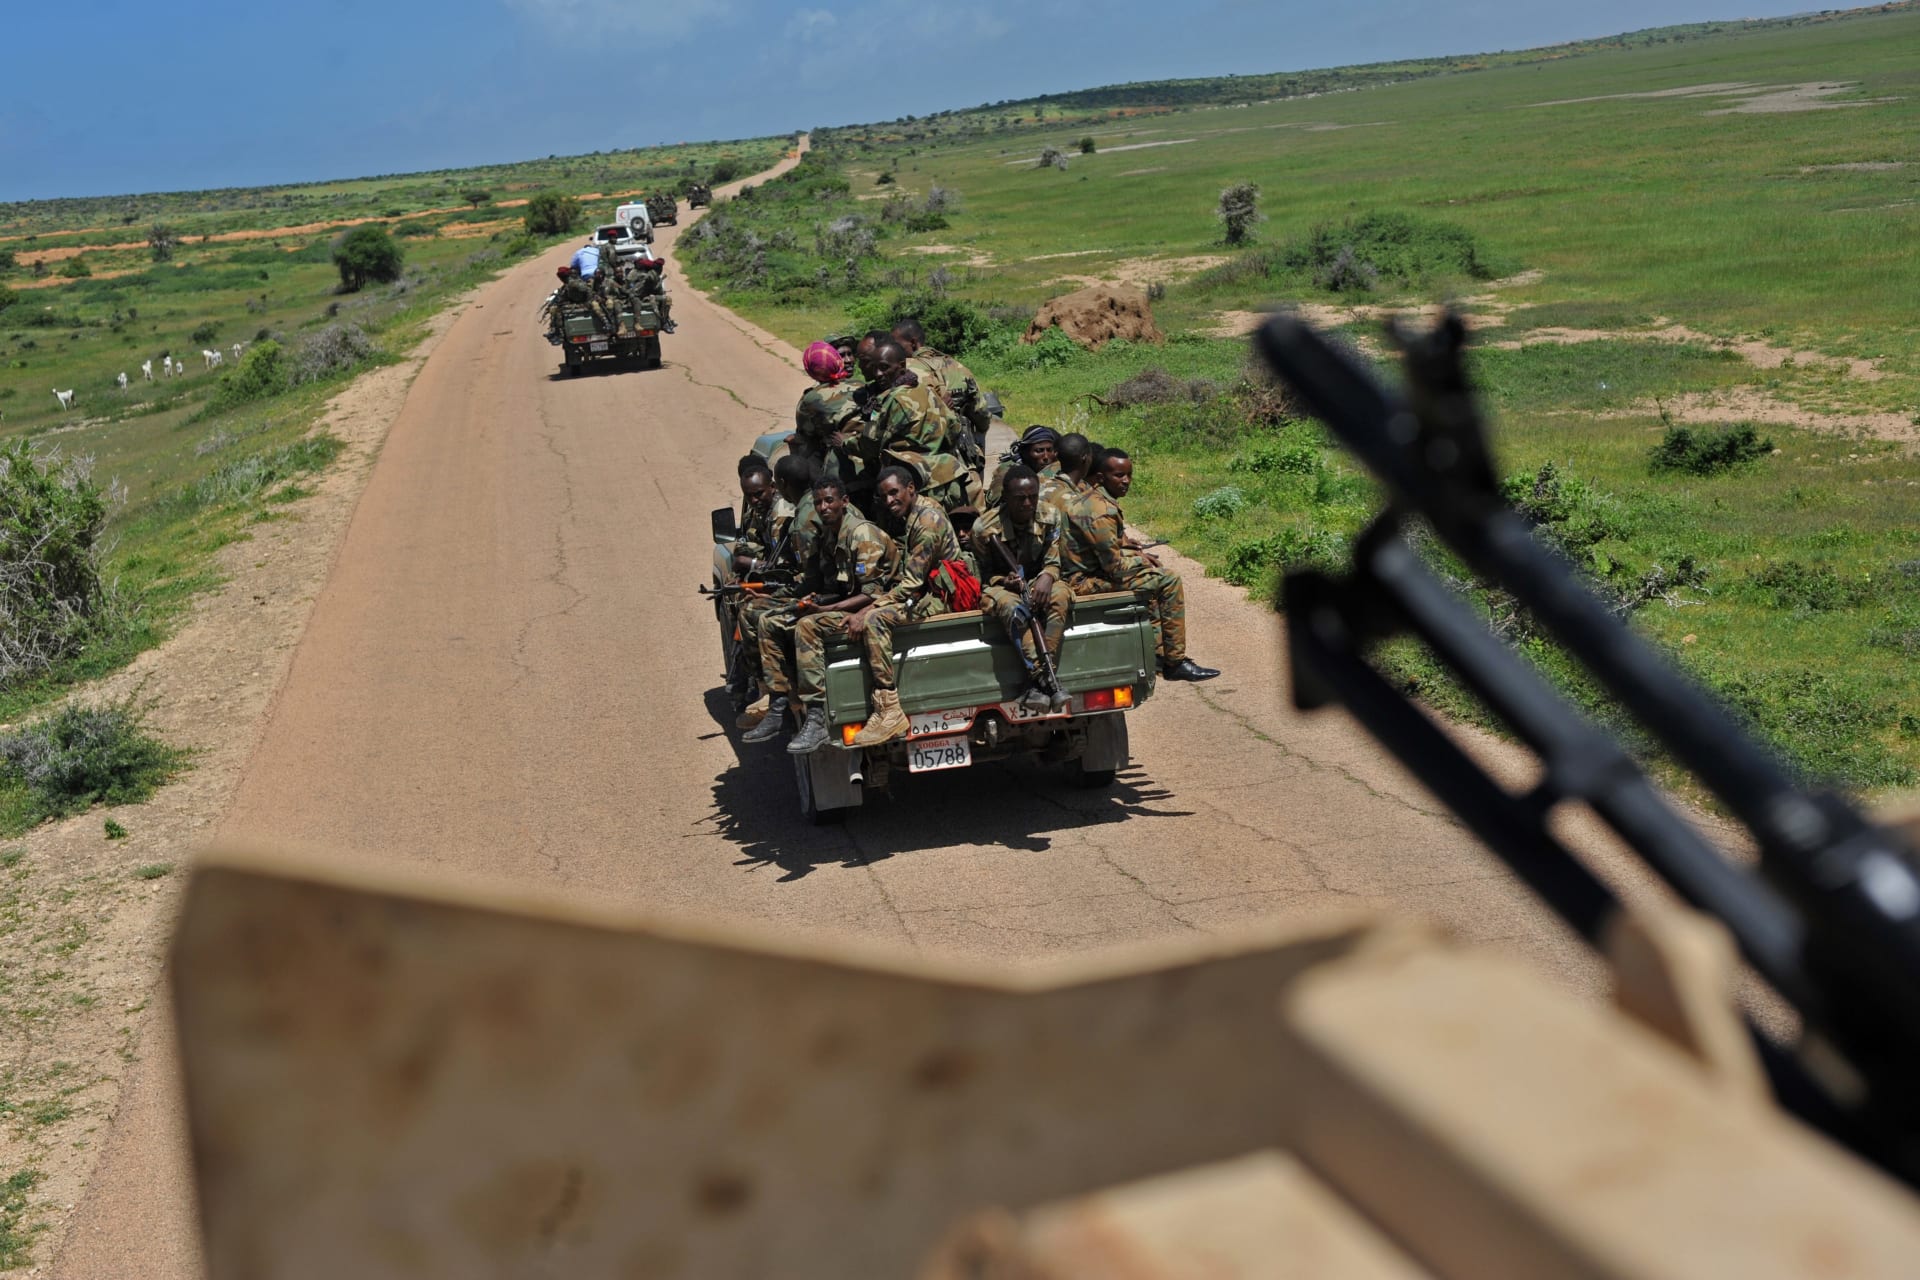 قائد صومالي: مسلحو حركة الشباب يهاجمون قاعدة عسكرية كبيرة للاتحاد الأفريقي